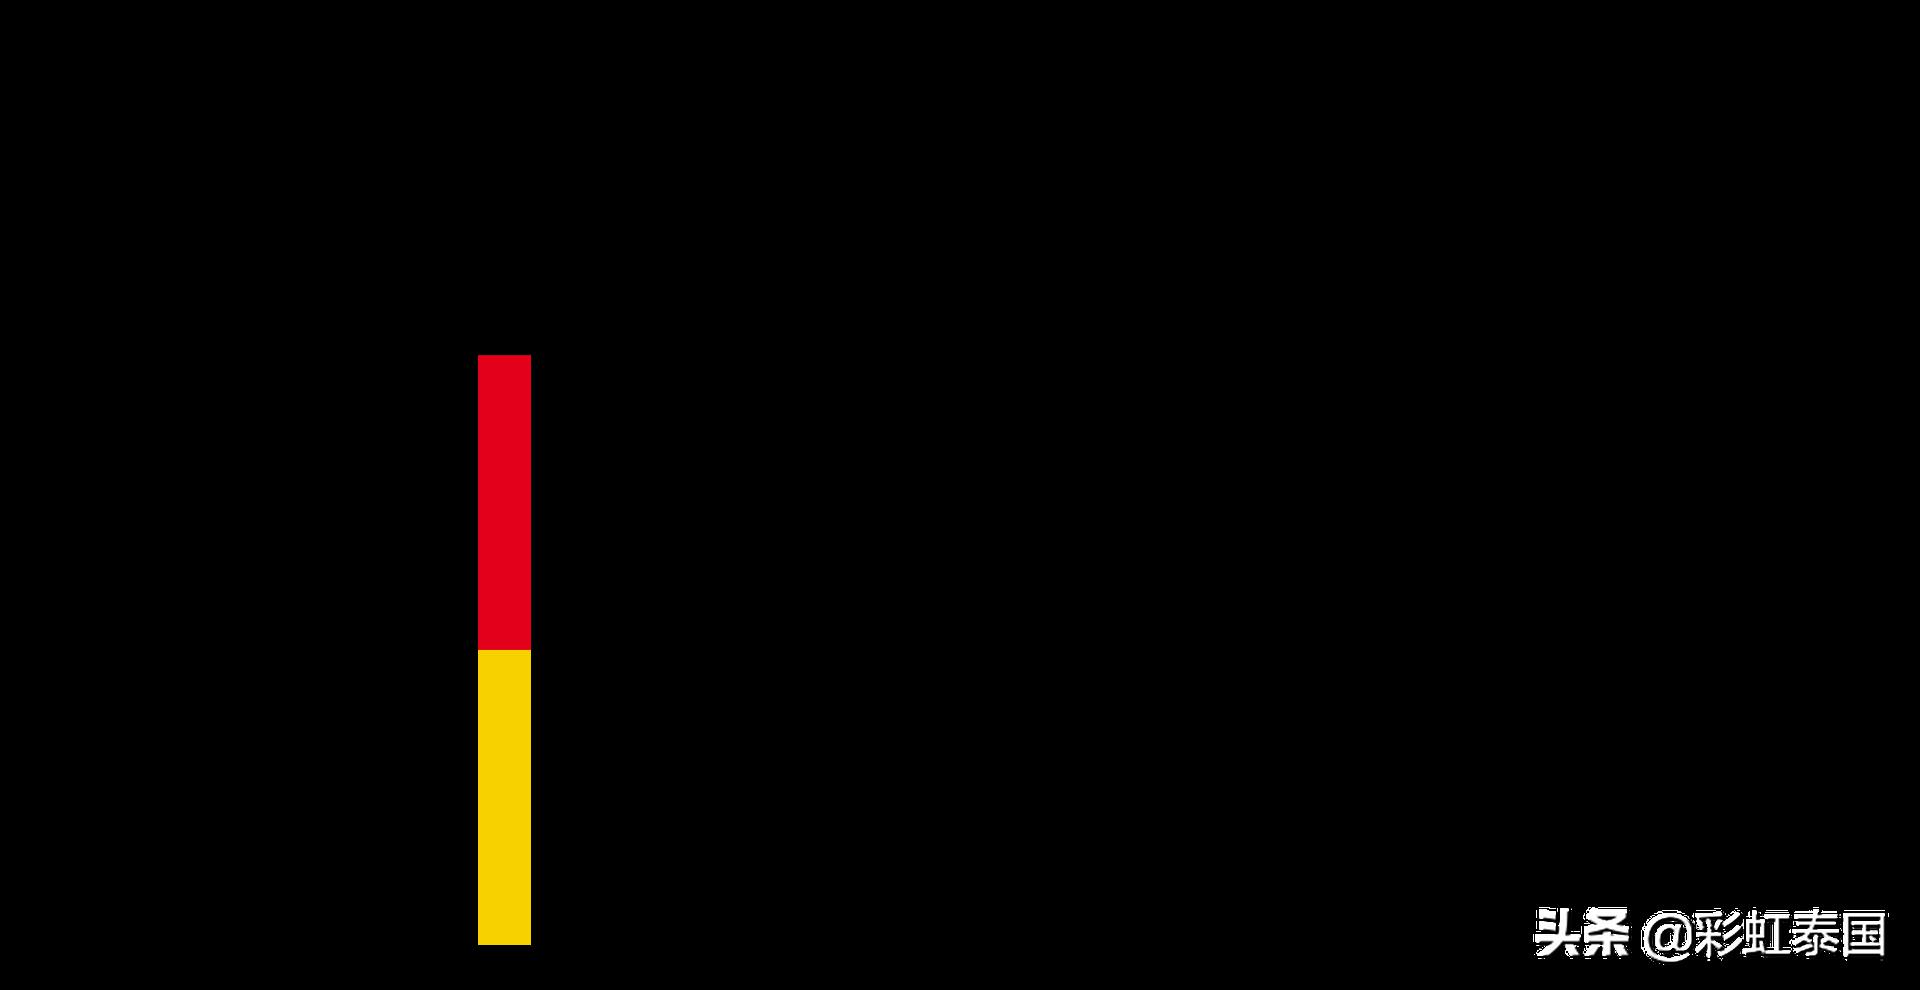 德甲标志大全 德国政府、各州及部门标志、徽章大全(4)